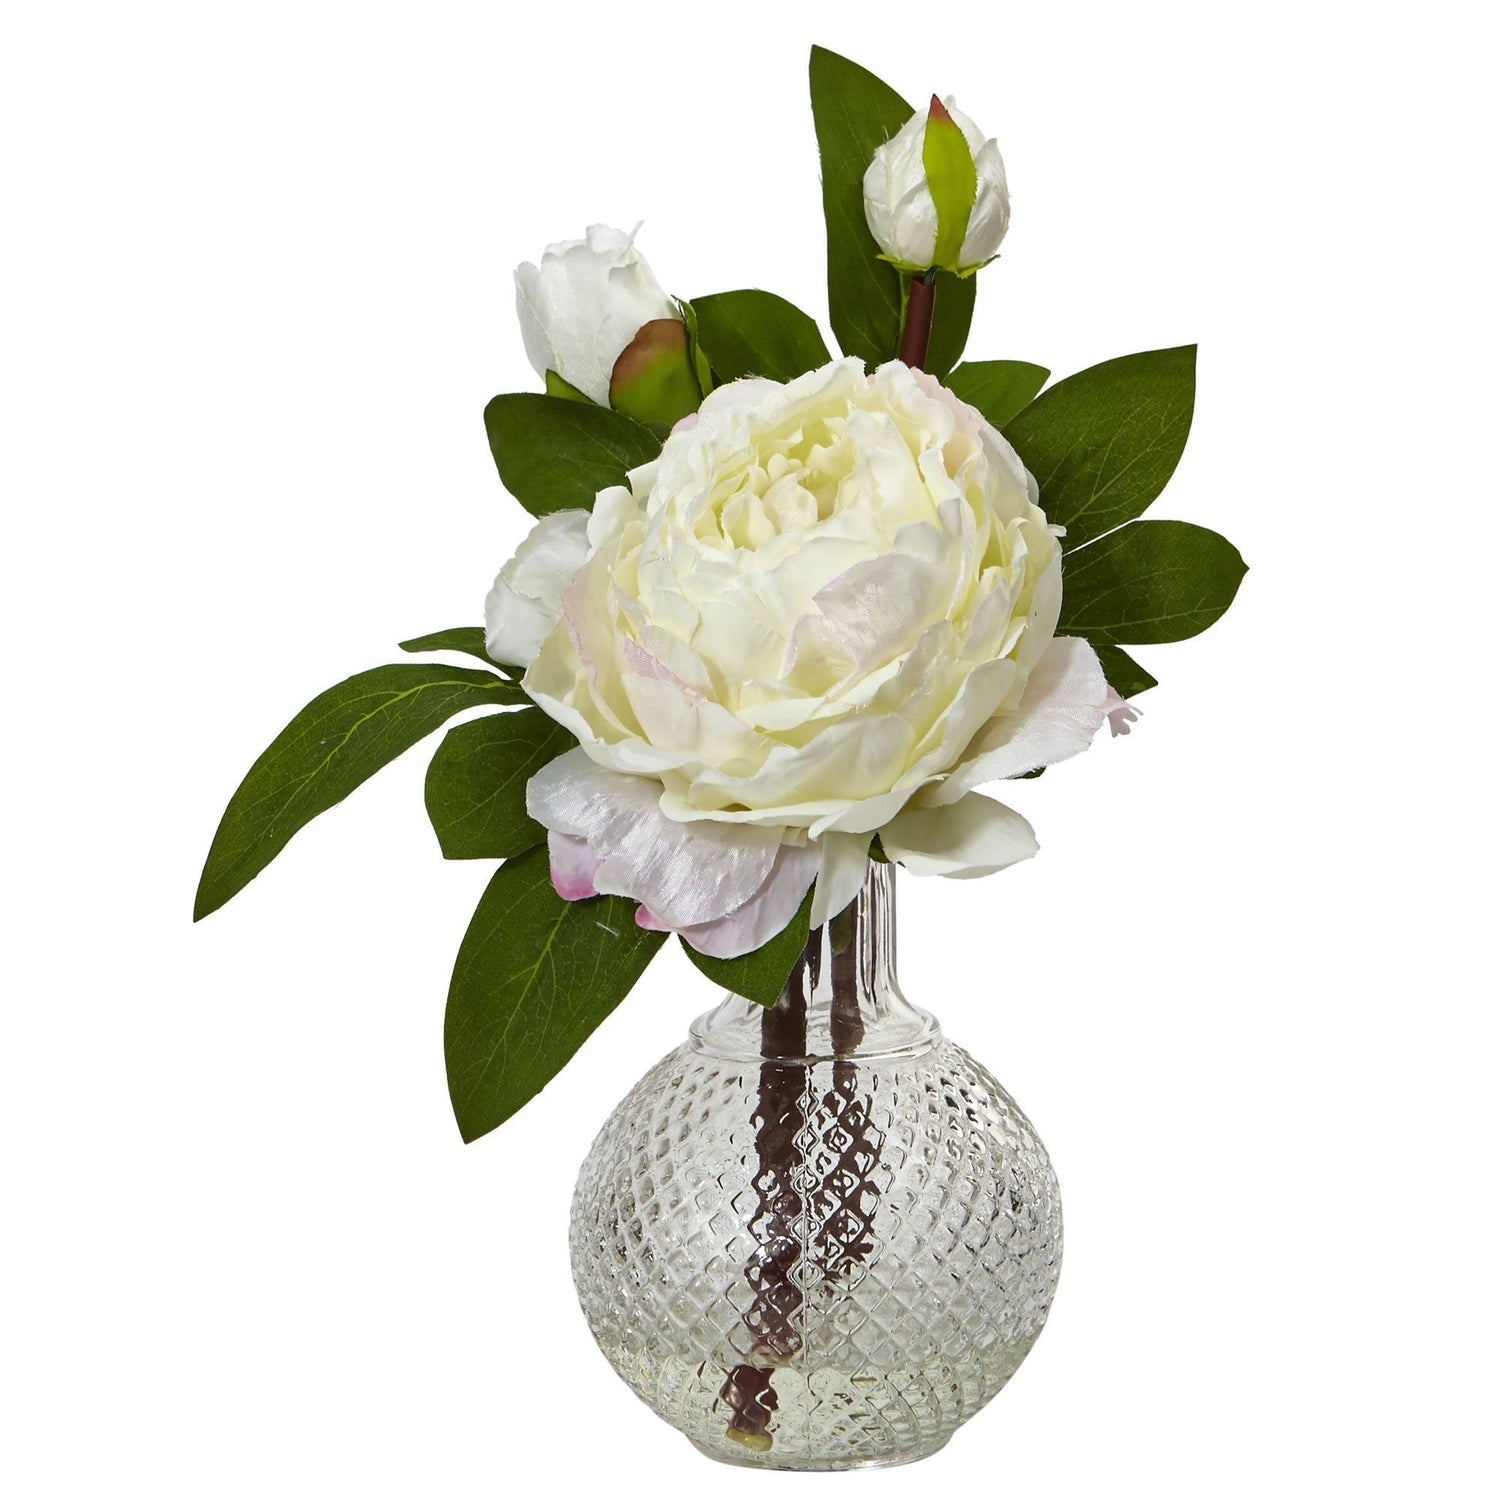 11” Peony with Vase (Set of 2)